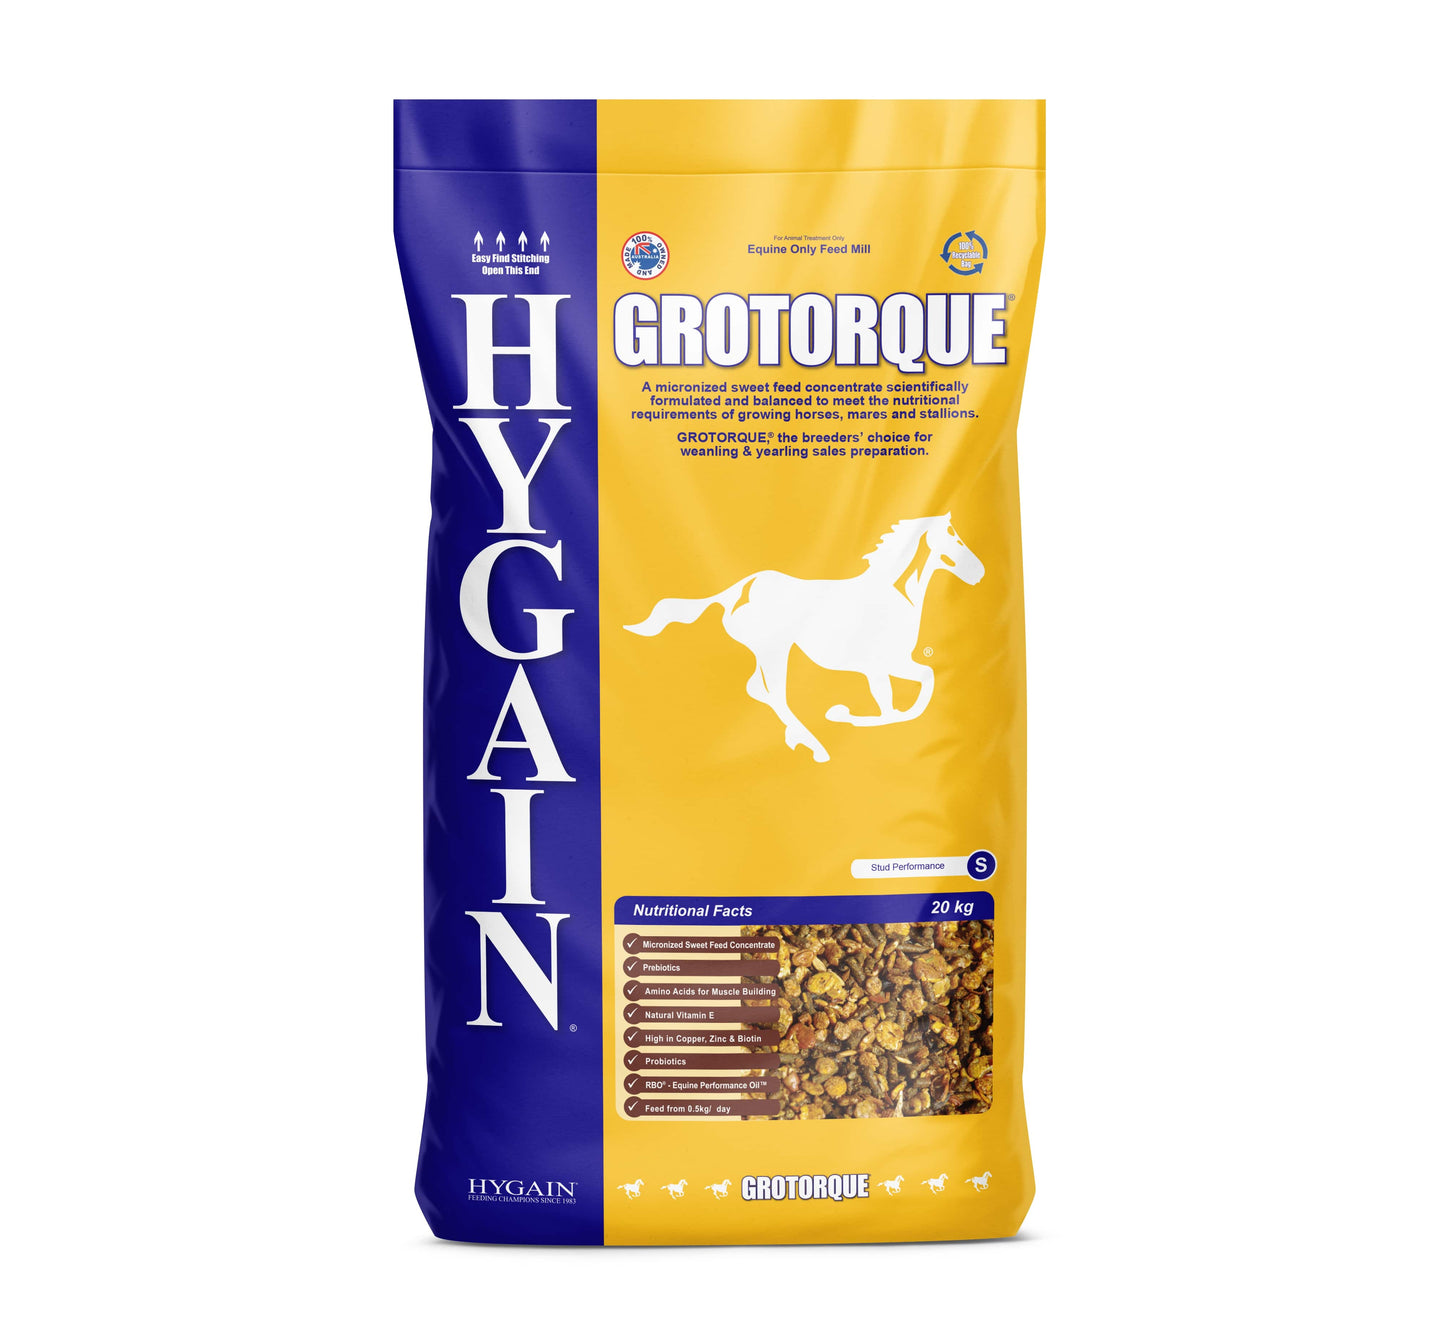 Hygain Grotorque Horse Feed